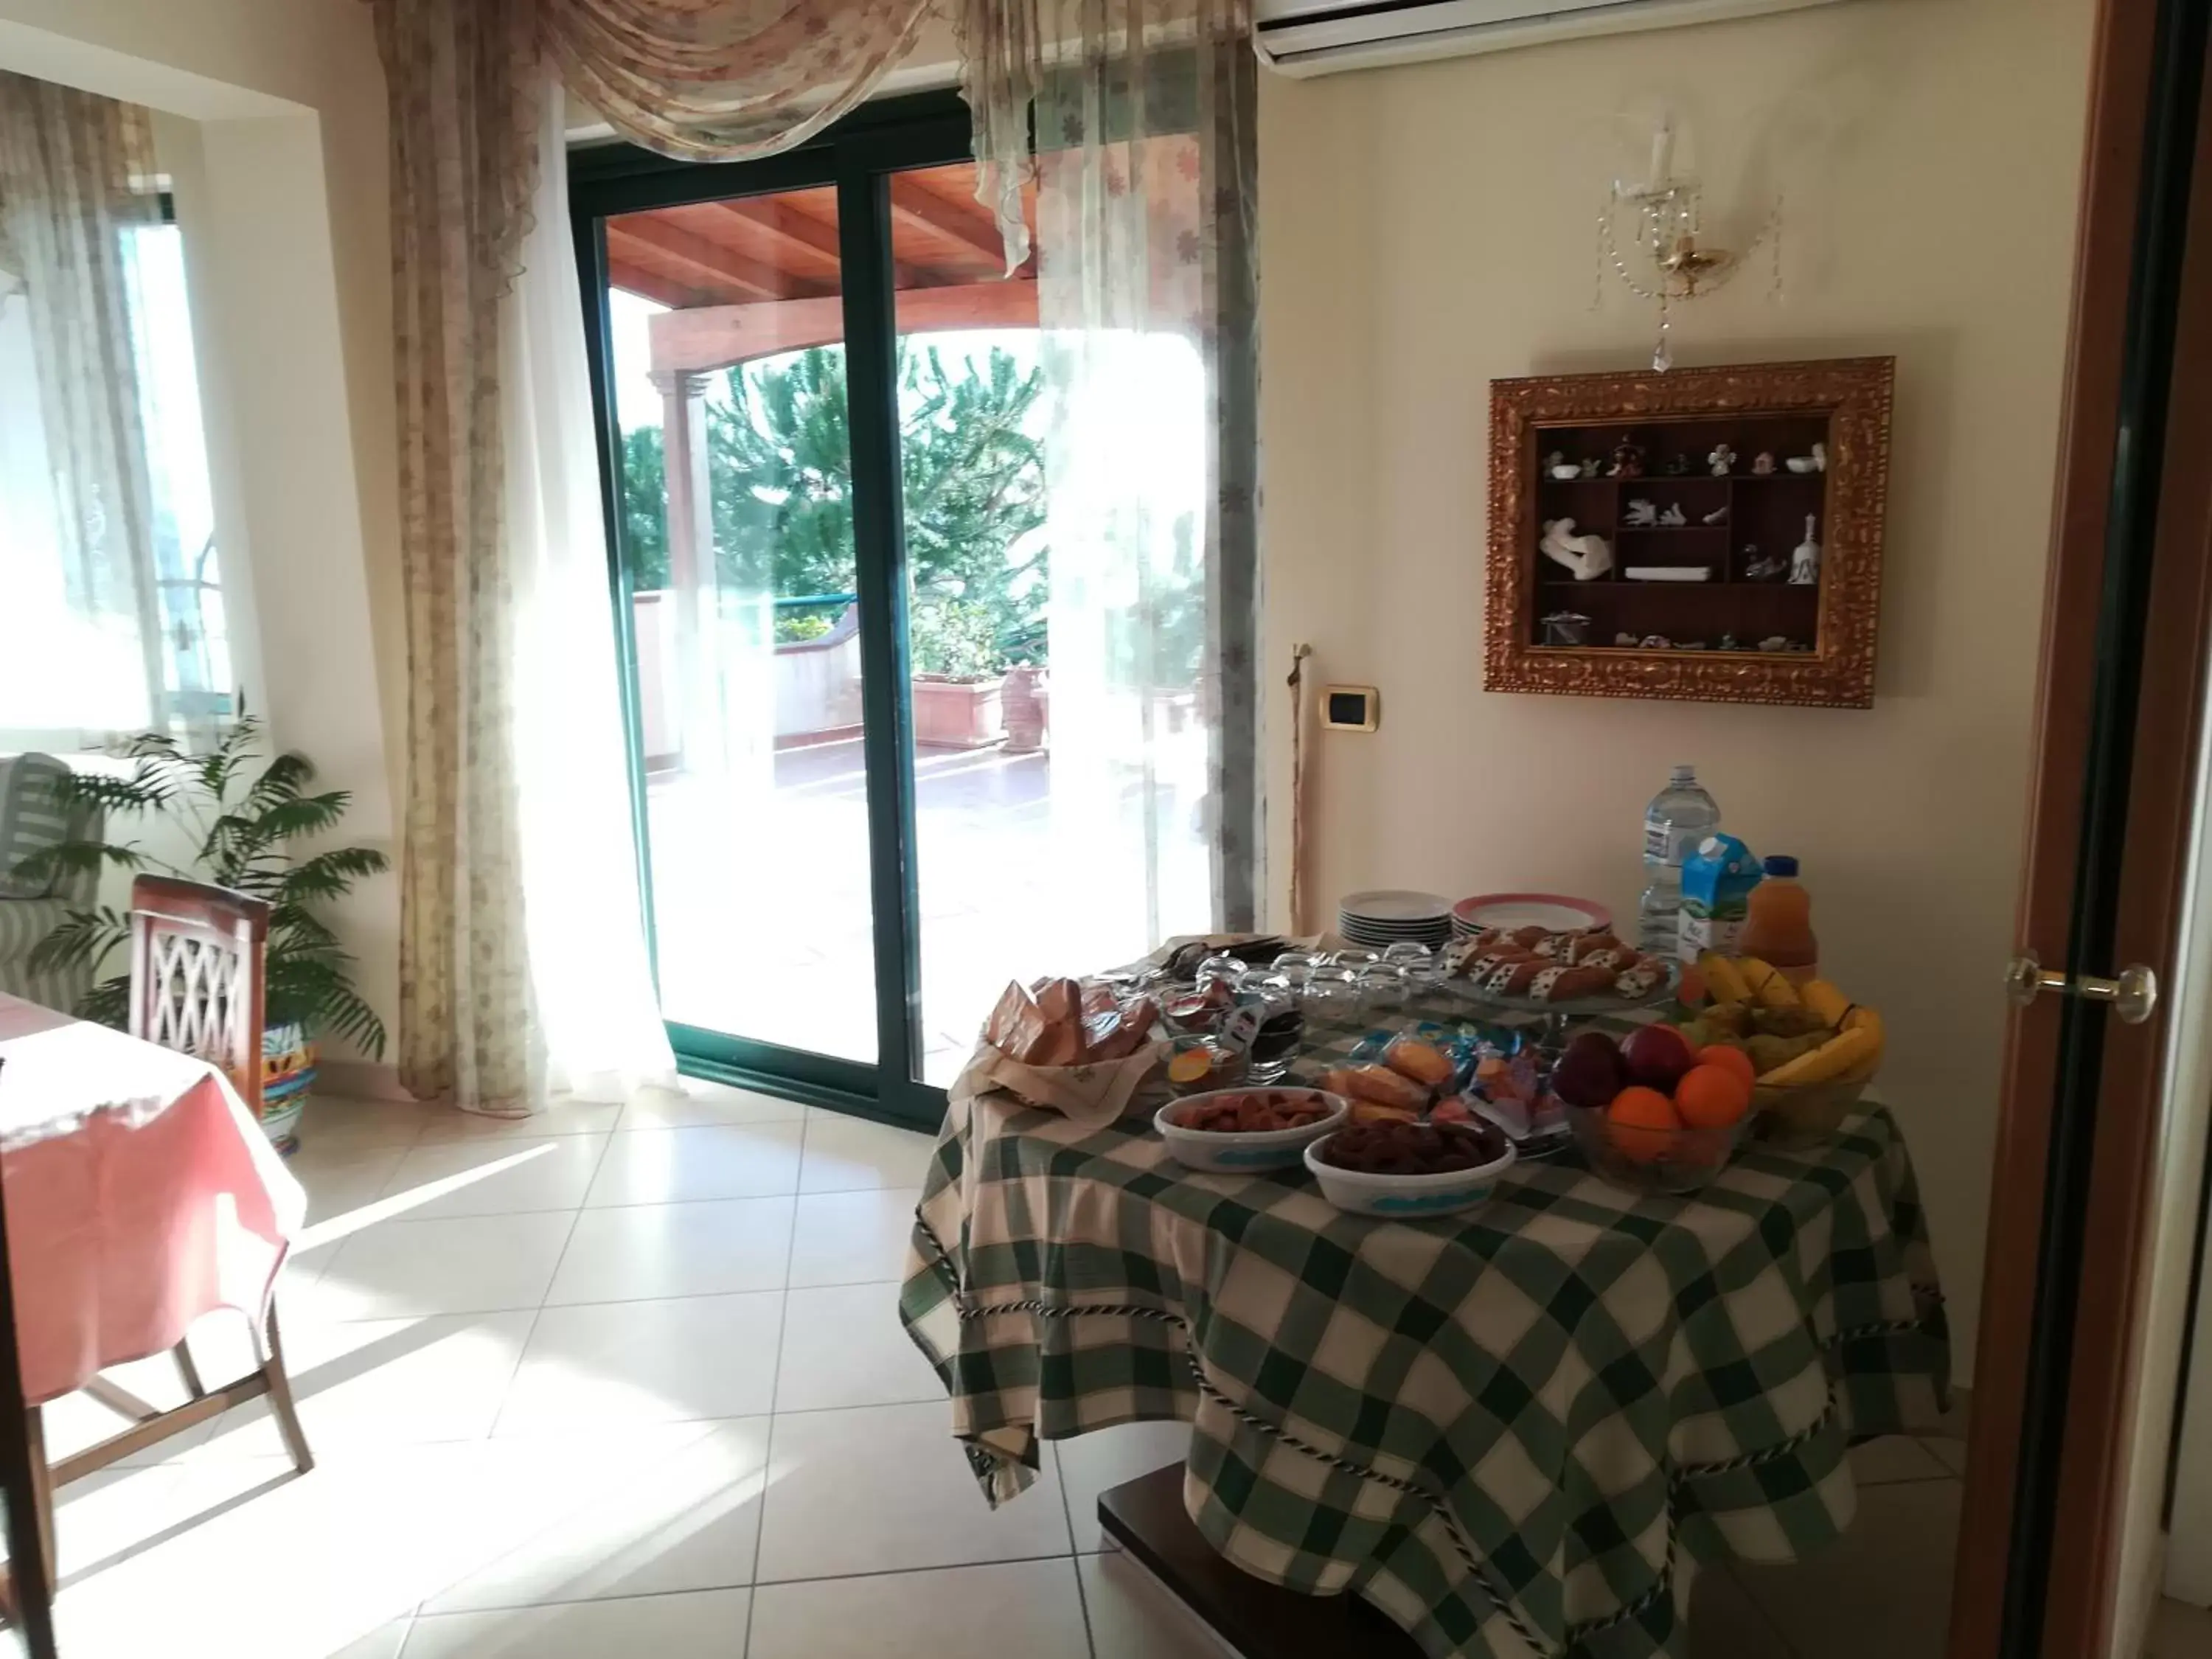 Italian breakfast in La Collina Capo d'Orlando